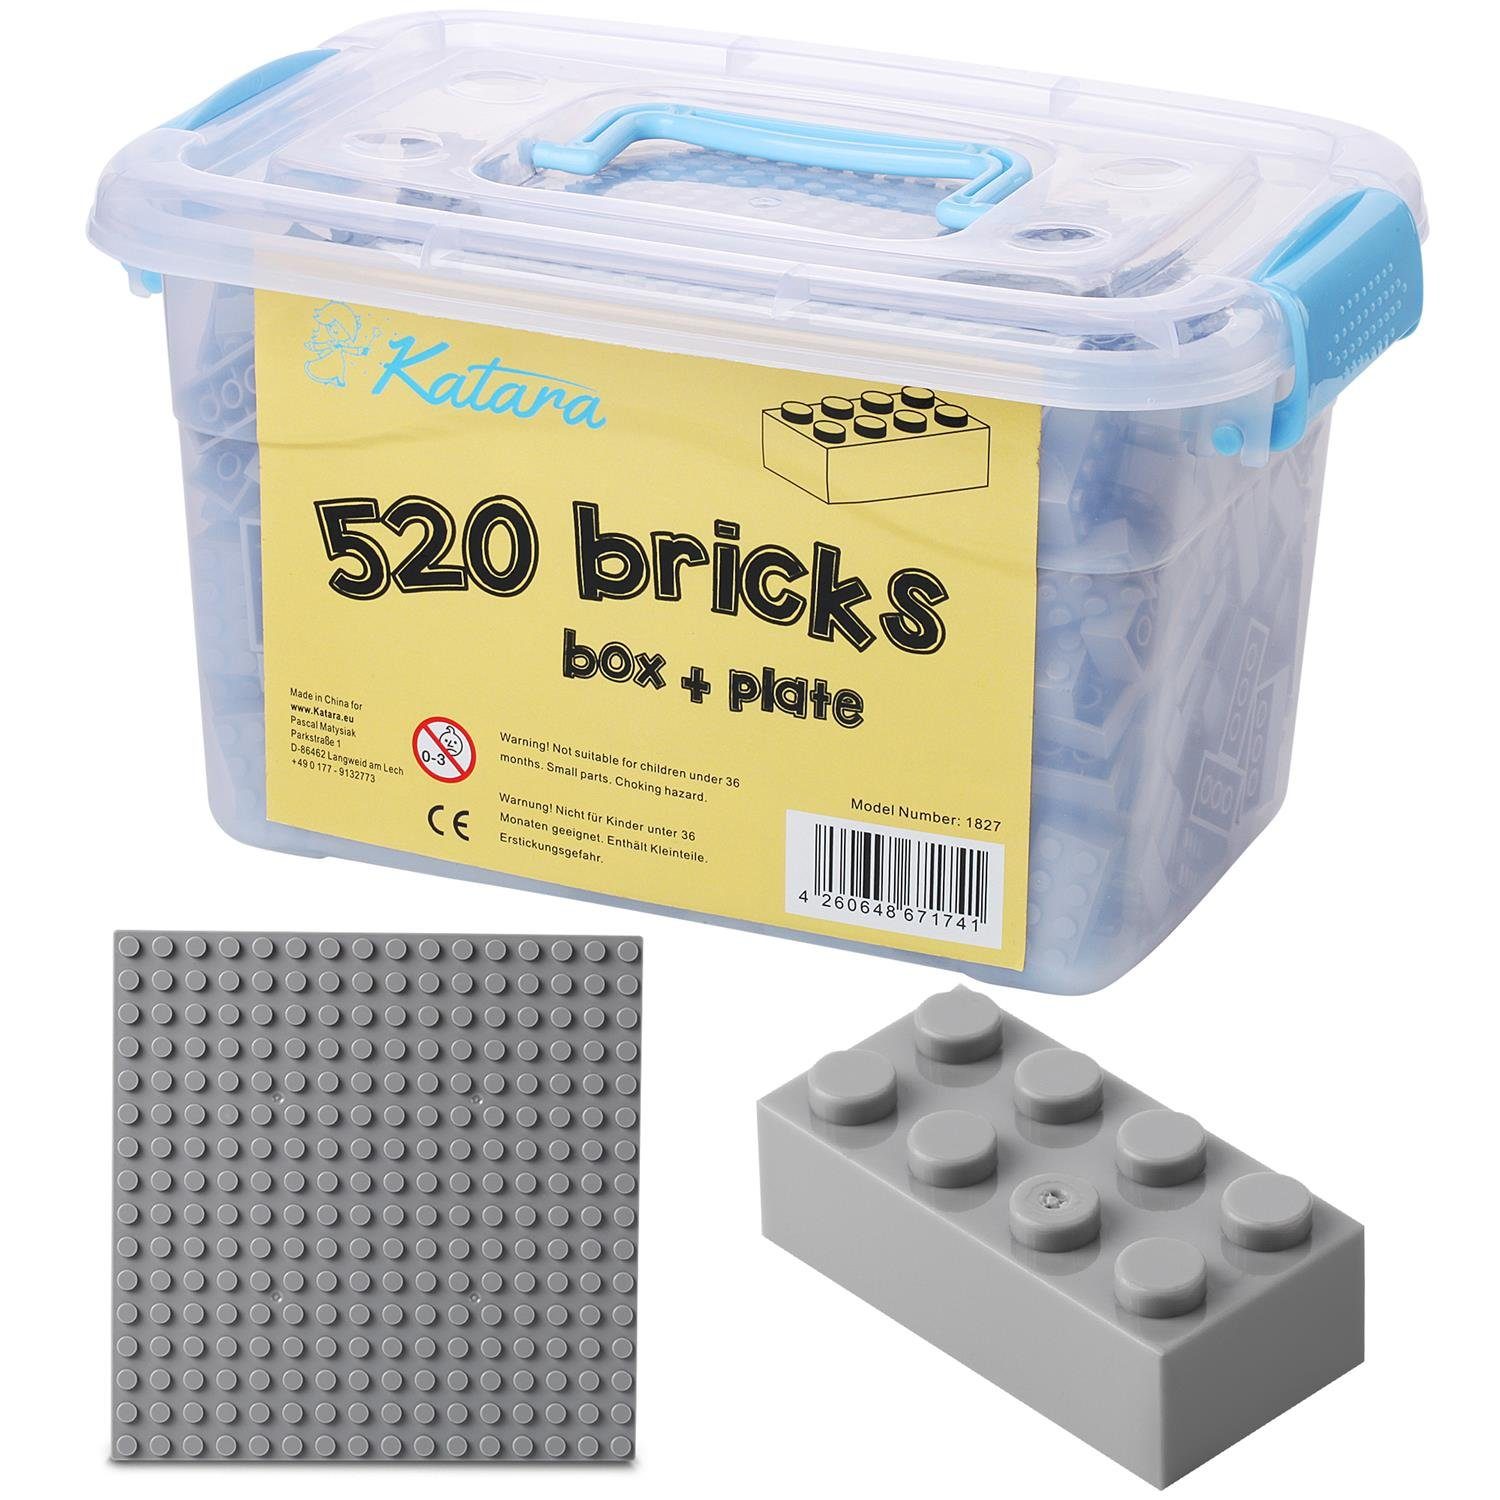 Katara Konstruktionsspielsteine Bausteine Box-Set mit 520 Steinen + Platte + Box, (3er Set), Kompatibel zu allen Anderen Herstellern - verschiedene Farben hell-grau